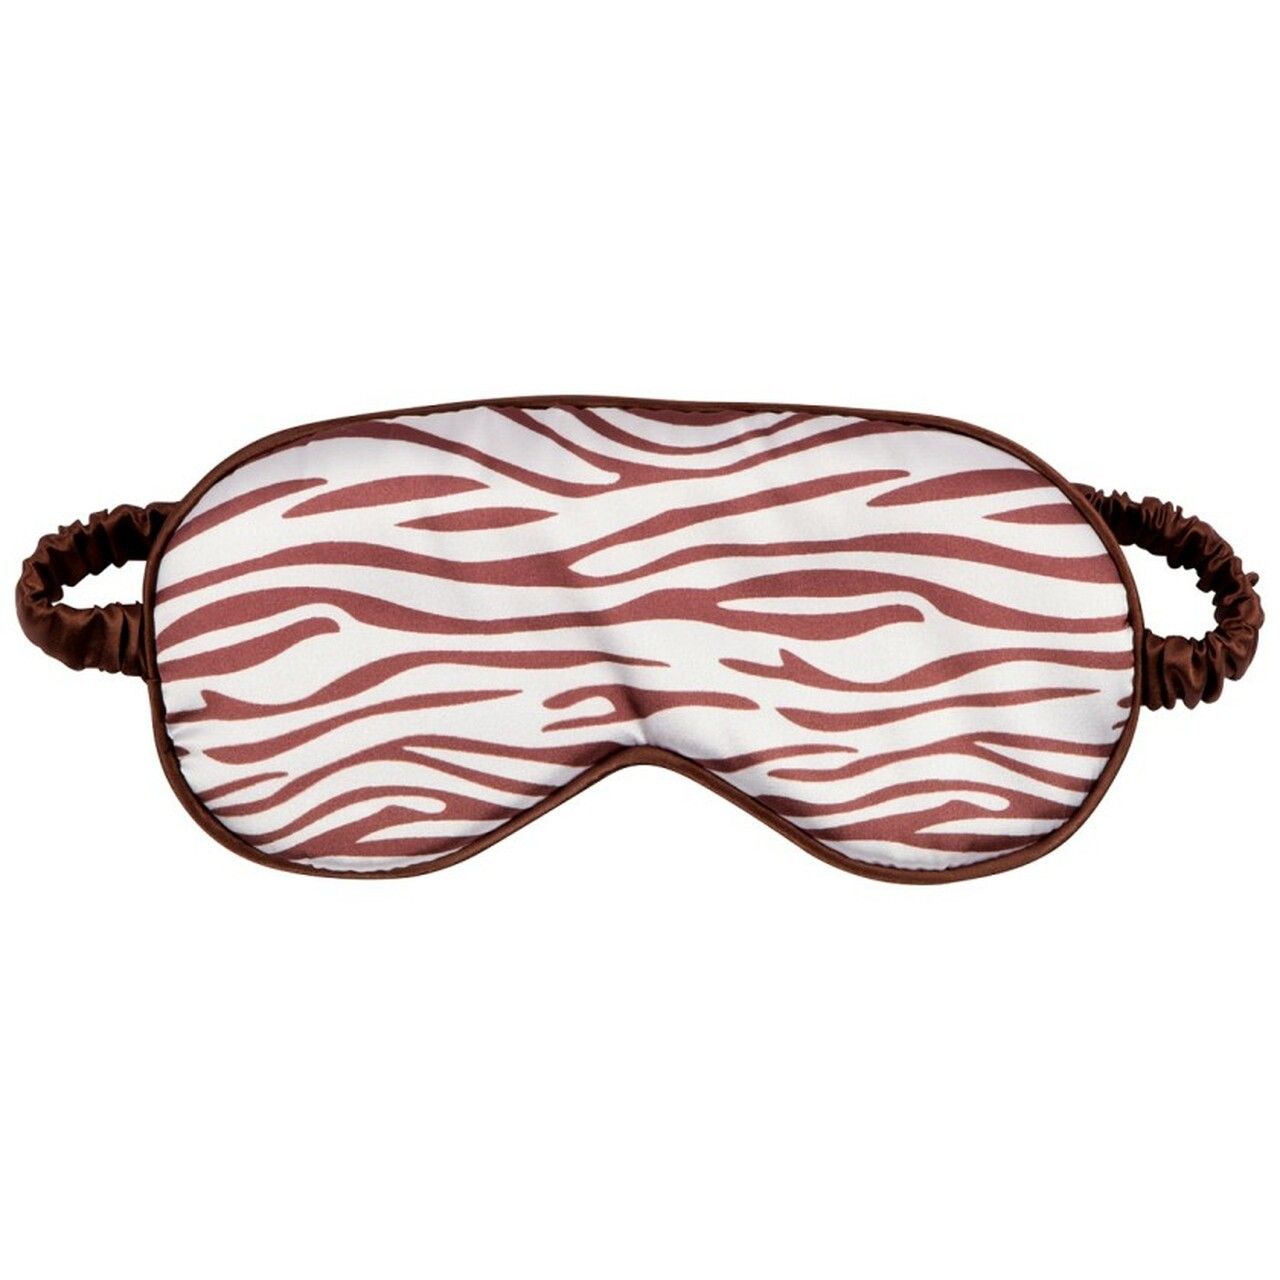 Sleep Mask - Zebra